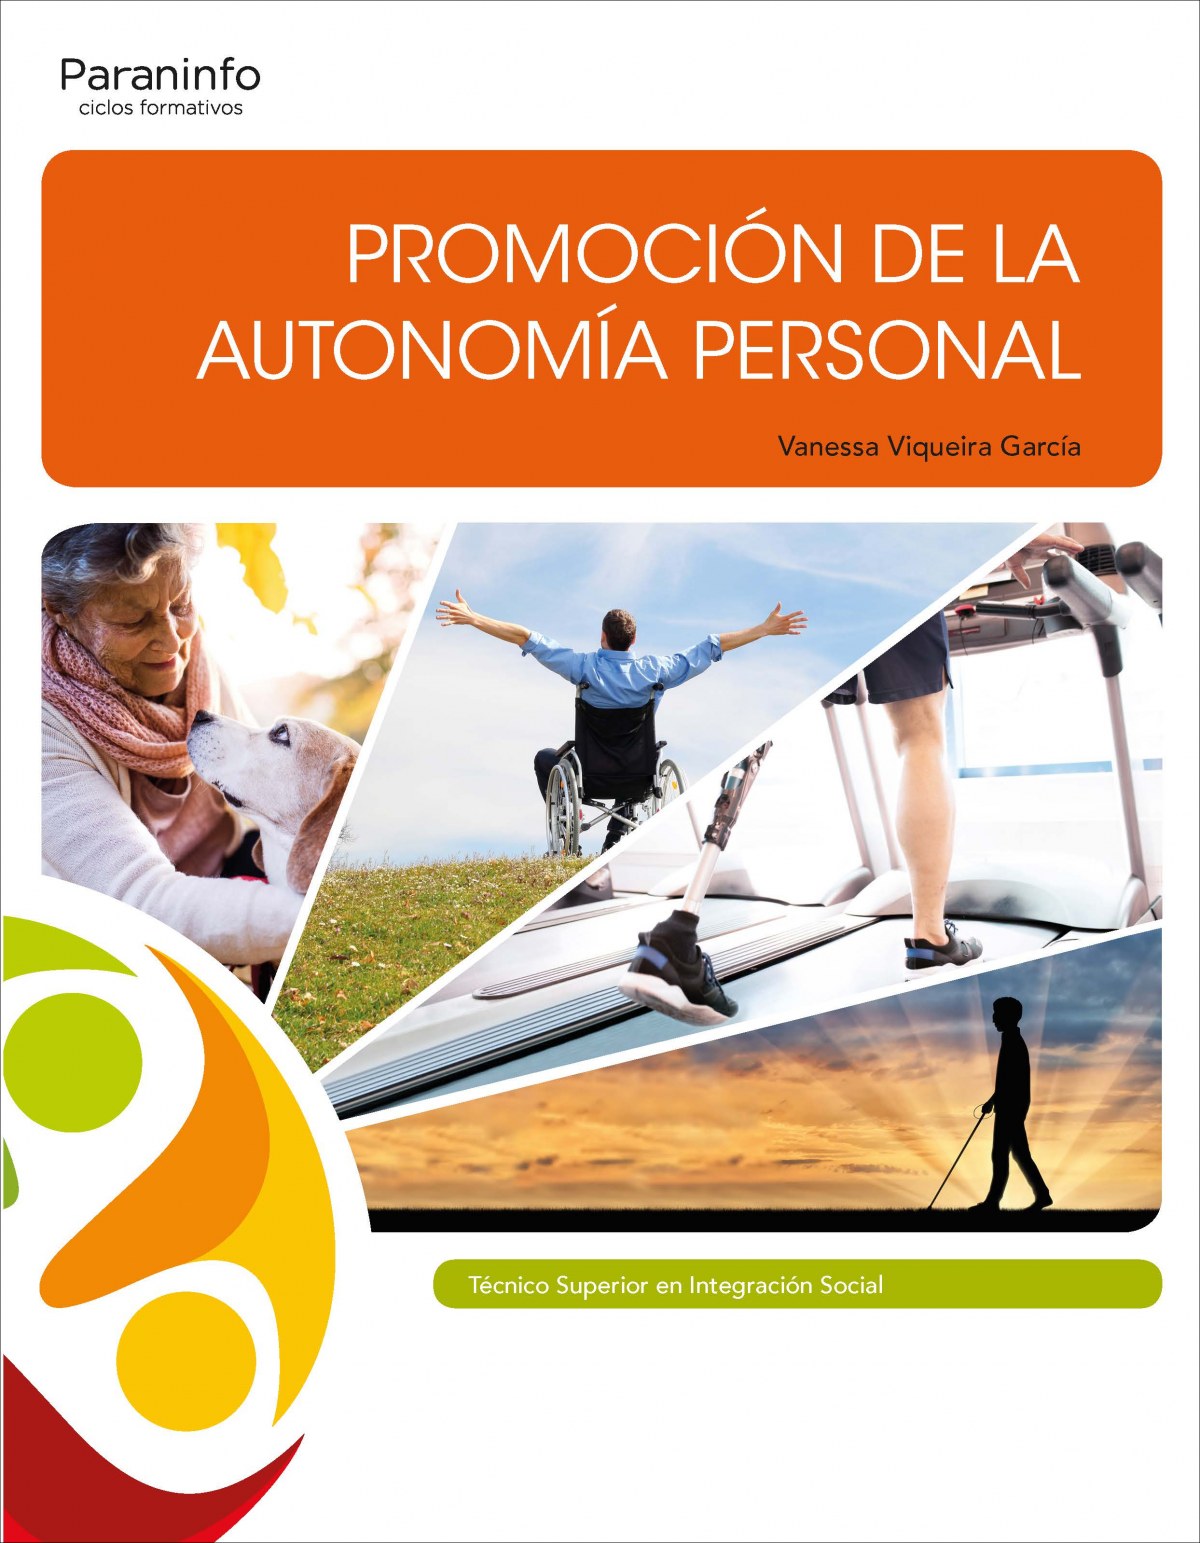 Promocion de la autonomia personal.(ciclos formativos) - Viqueira García, Vanessa